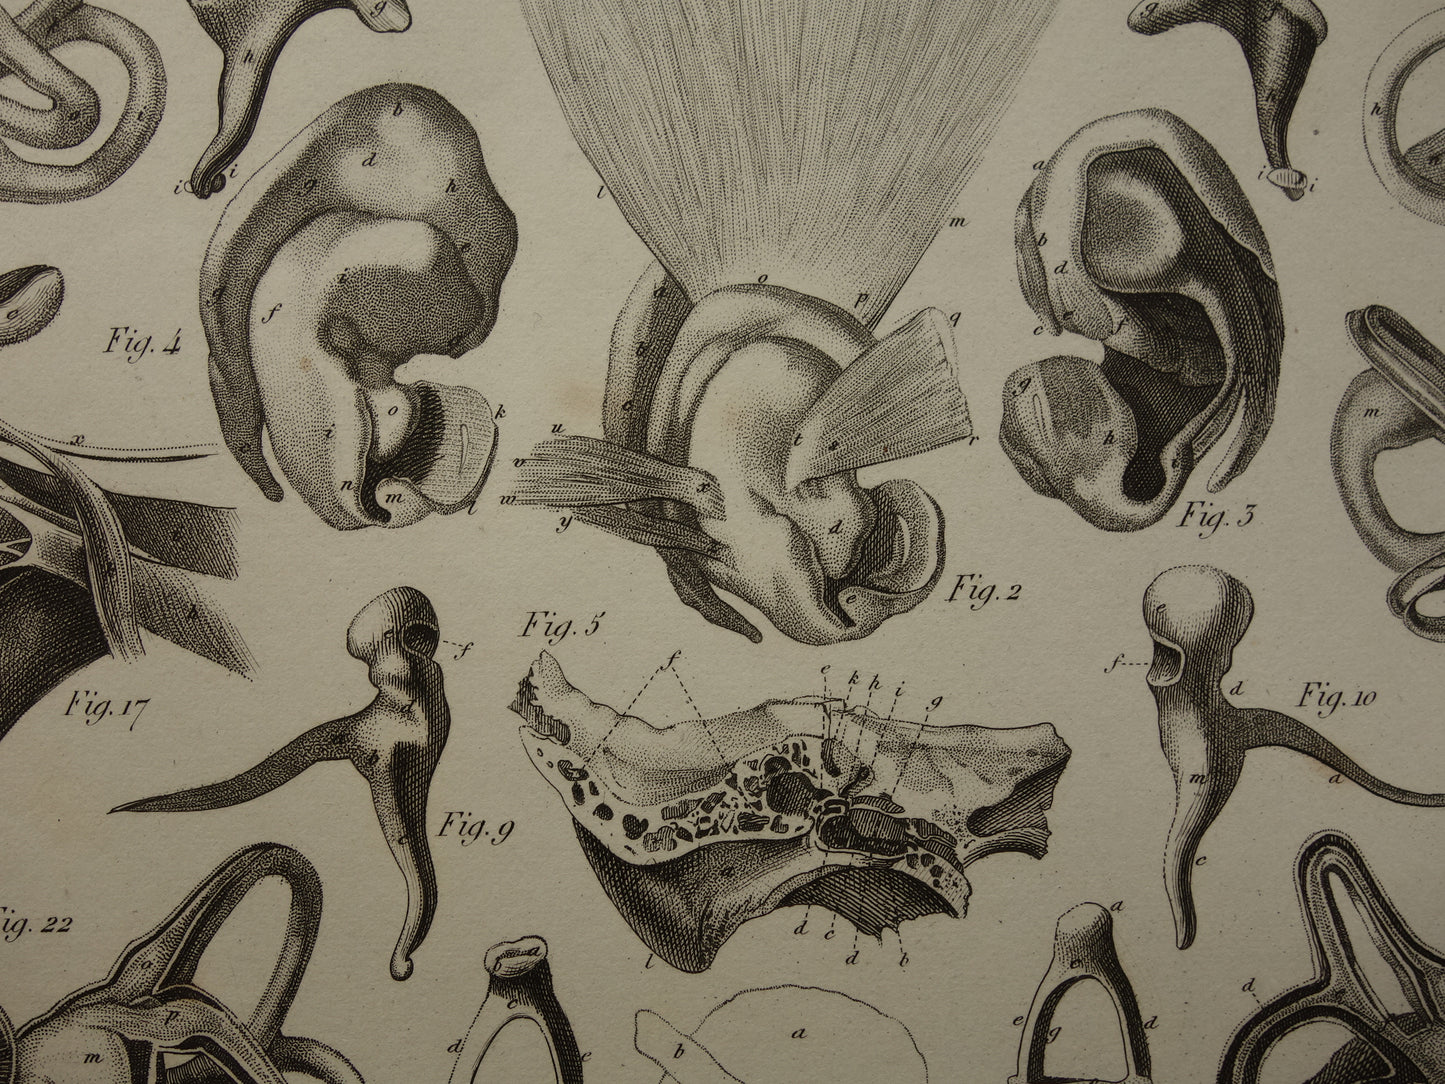 Oude anatomie prent over het menselijk oor 1849 originele antieke anatomische prent oren gehoor vintage illustratie